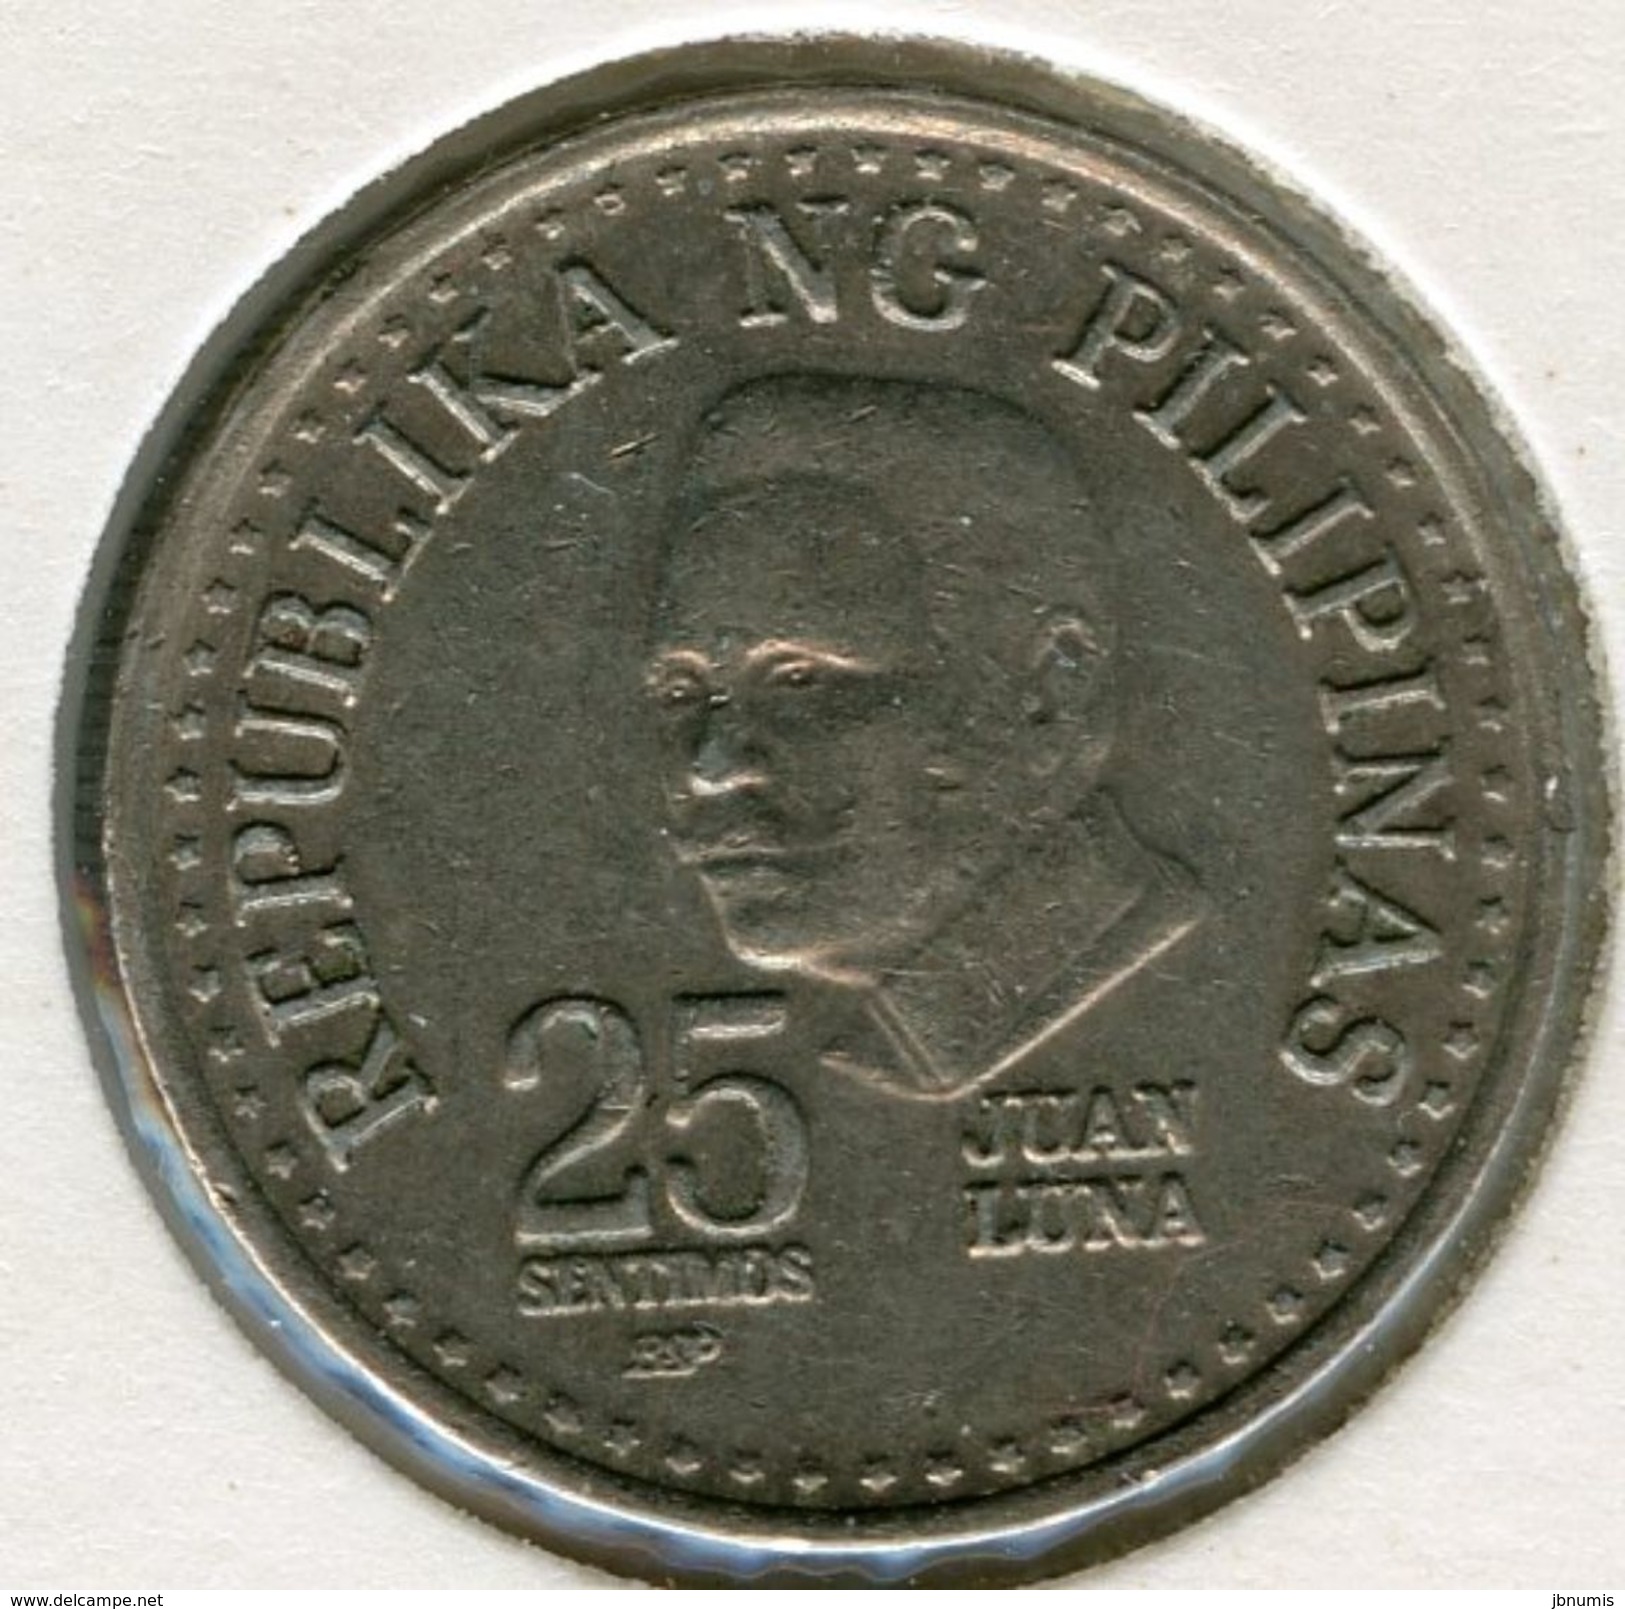 Philippines 25 Sentimos 1982 KM 227 - Philippinen